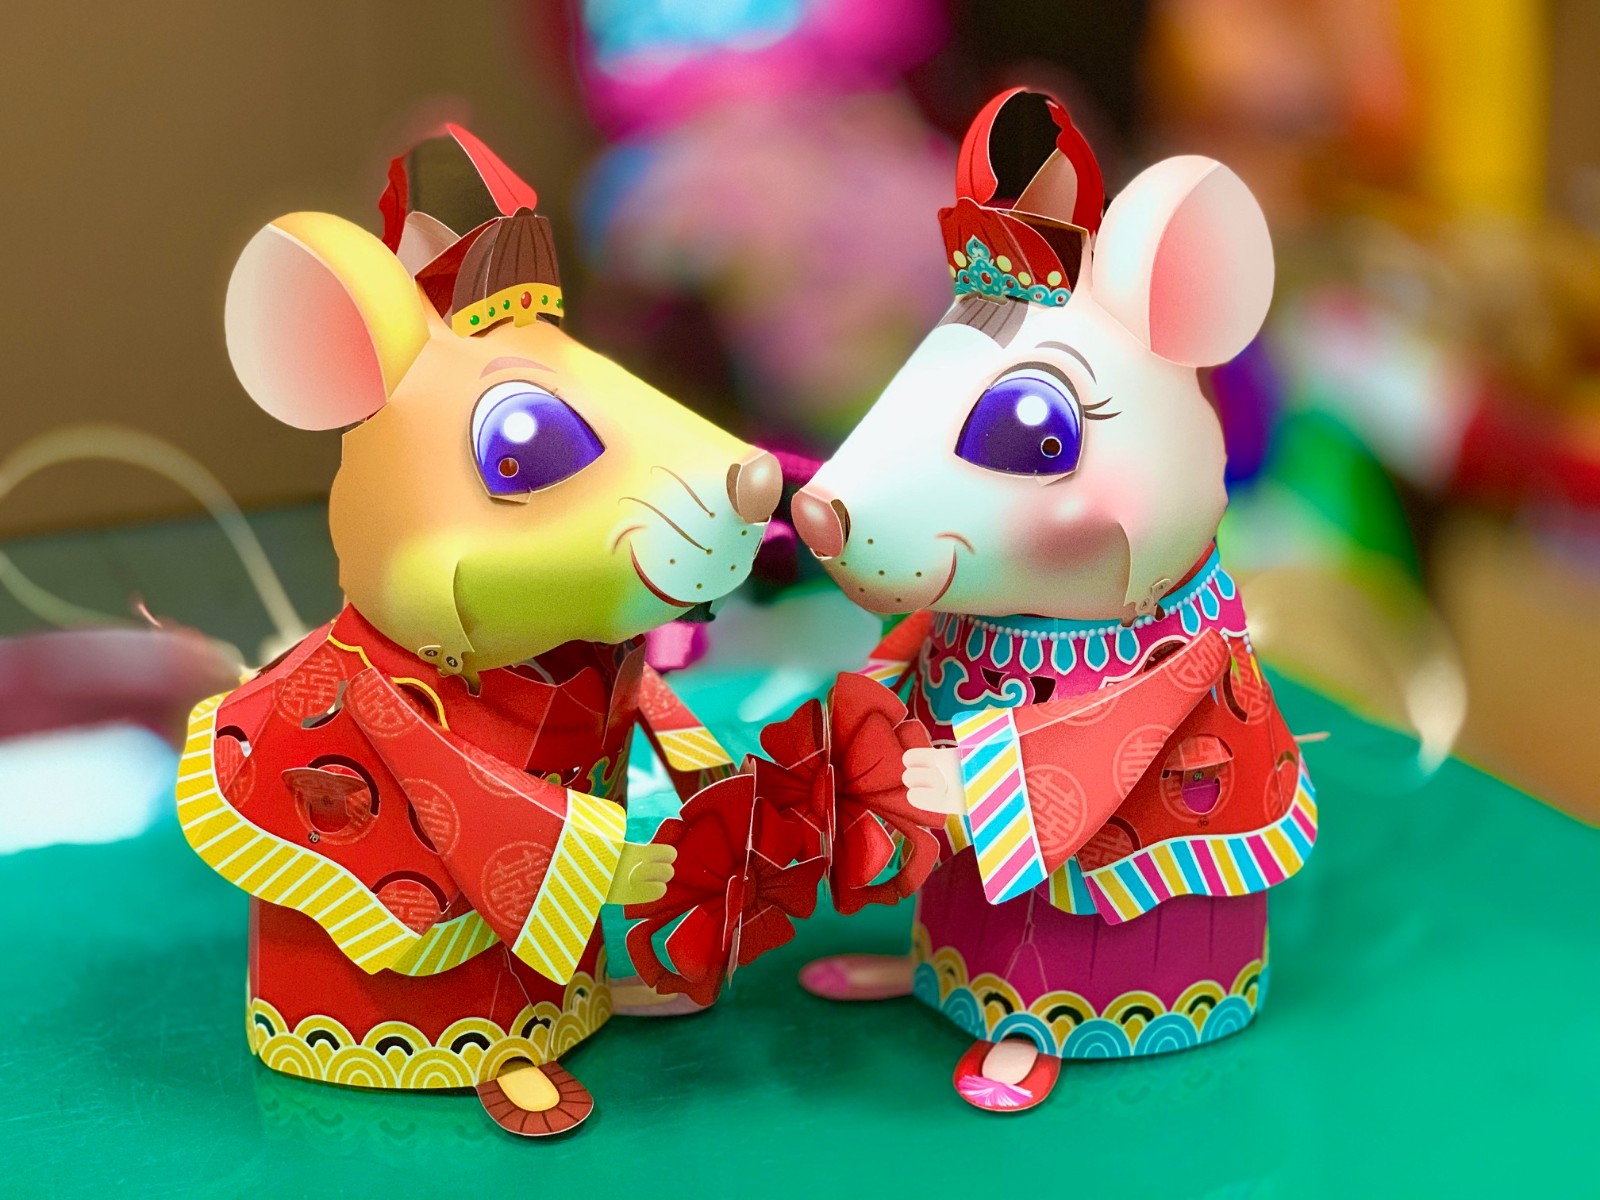 今年燈會小提燈-吉利鼠與美力鼠-每人可免費領取1盞